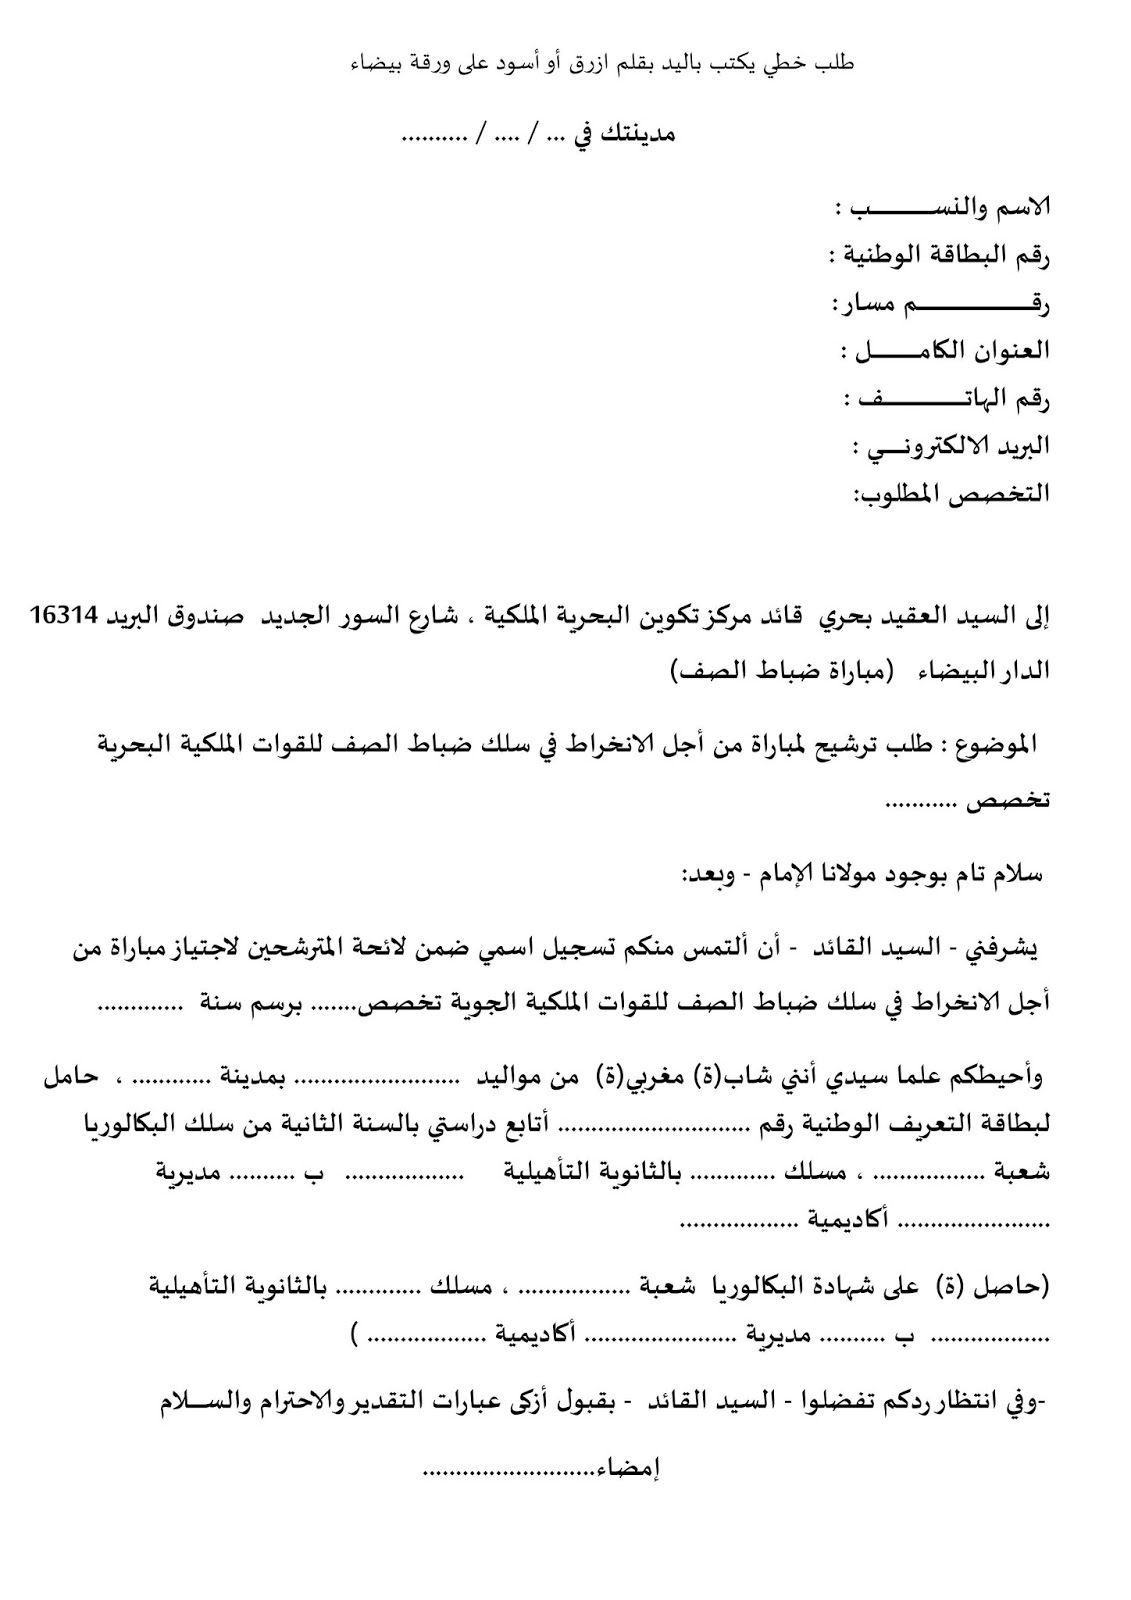 نموذج طلب ترقية وزارة الصحة